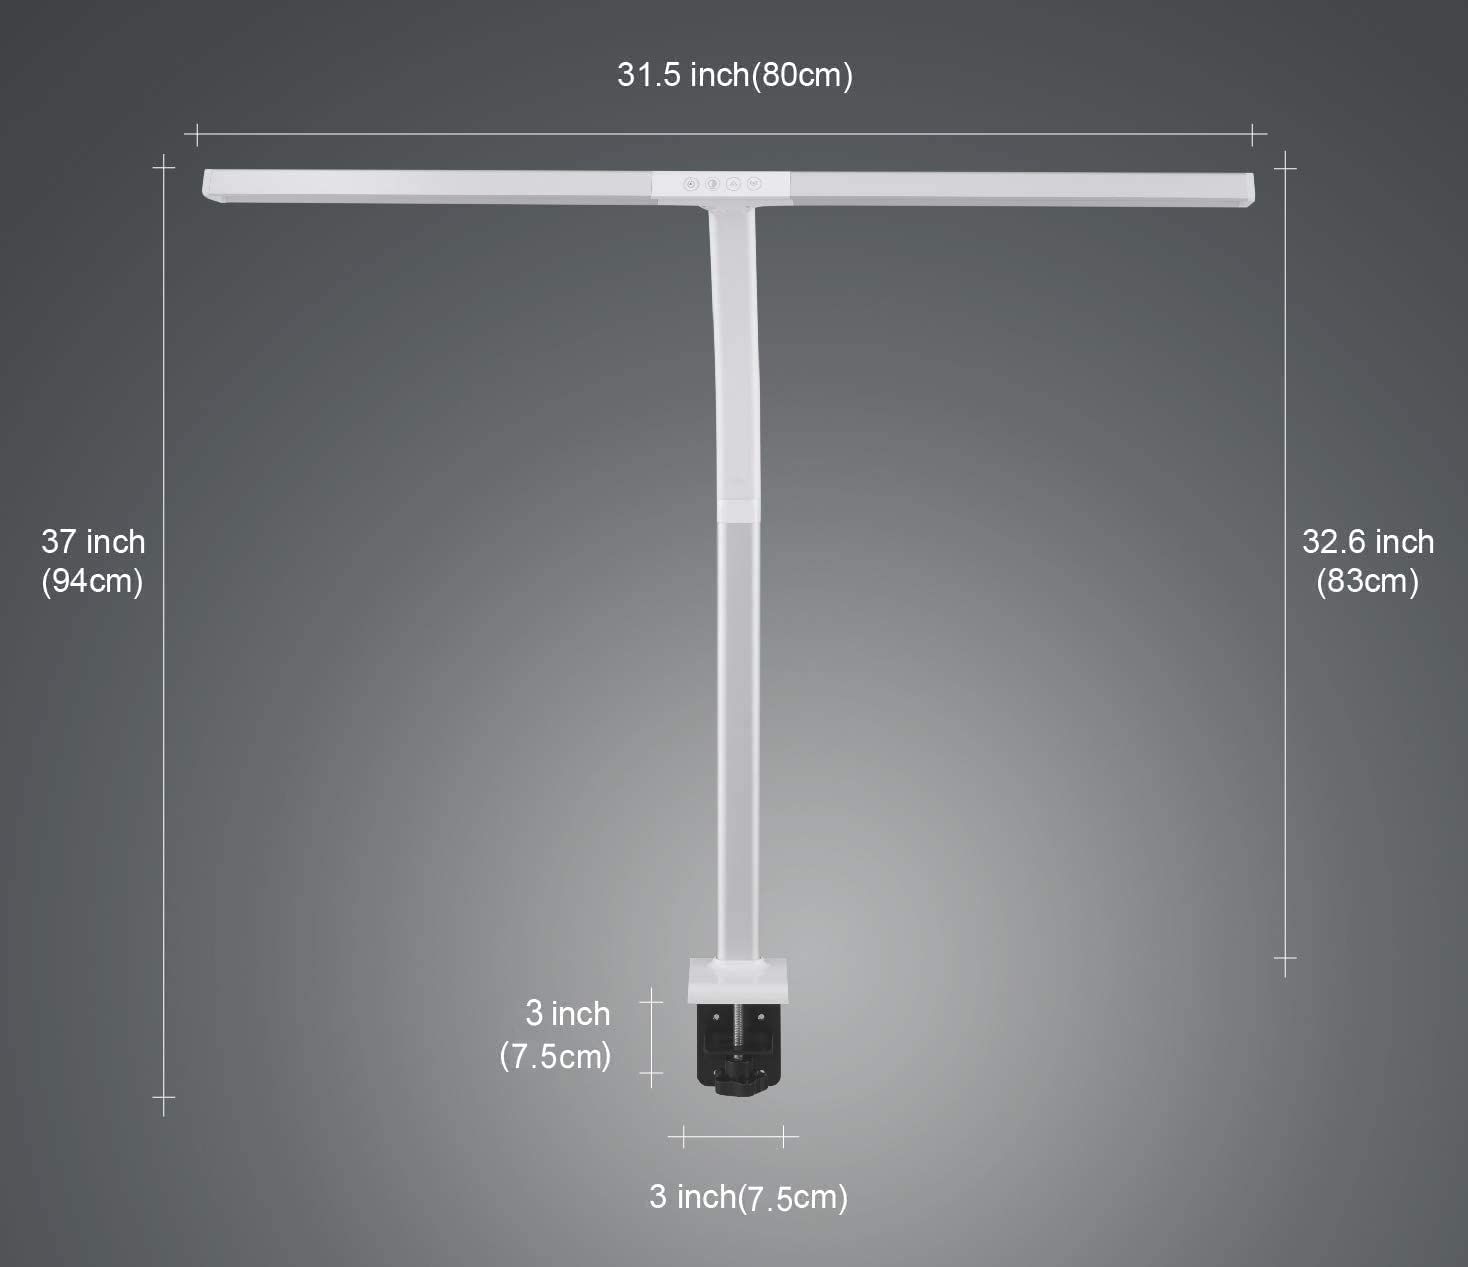 Phive LED Task Lamp dimensions